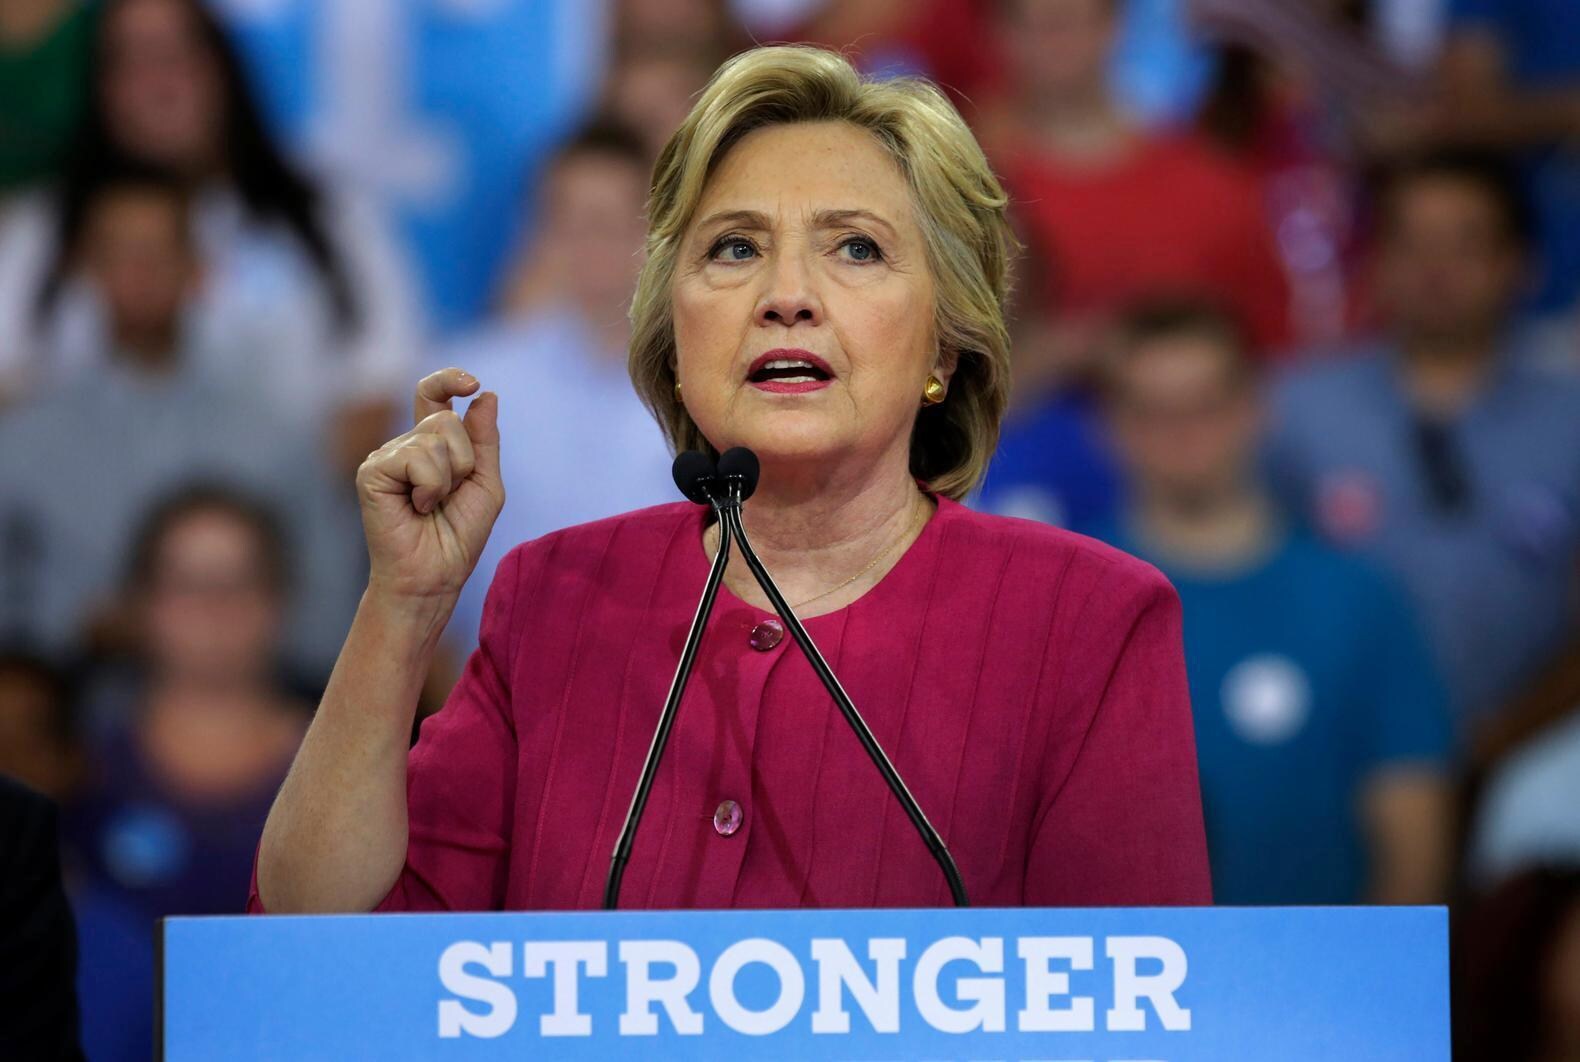 Campagne van Hillary Clinton ook slachtoffer van cyberaanval